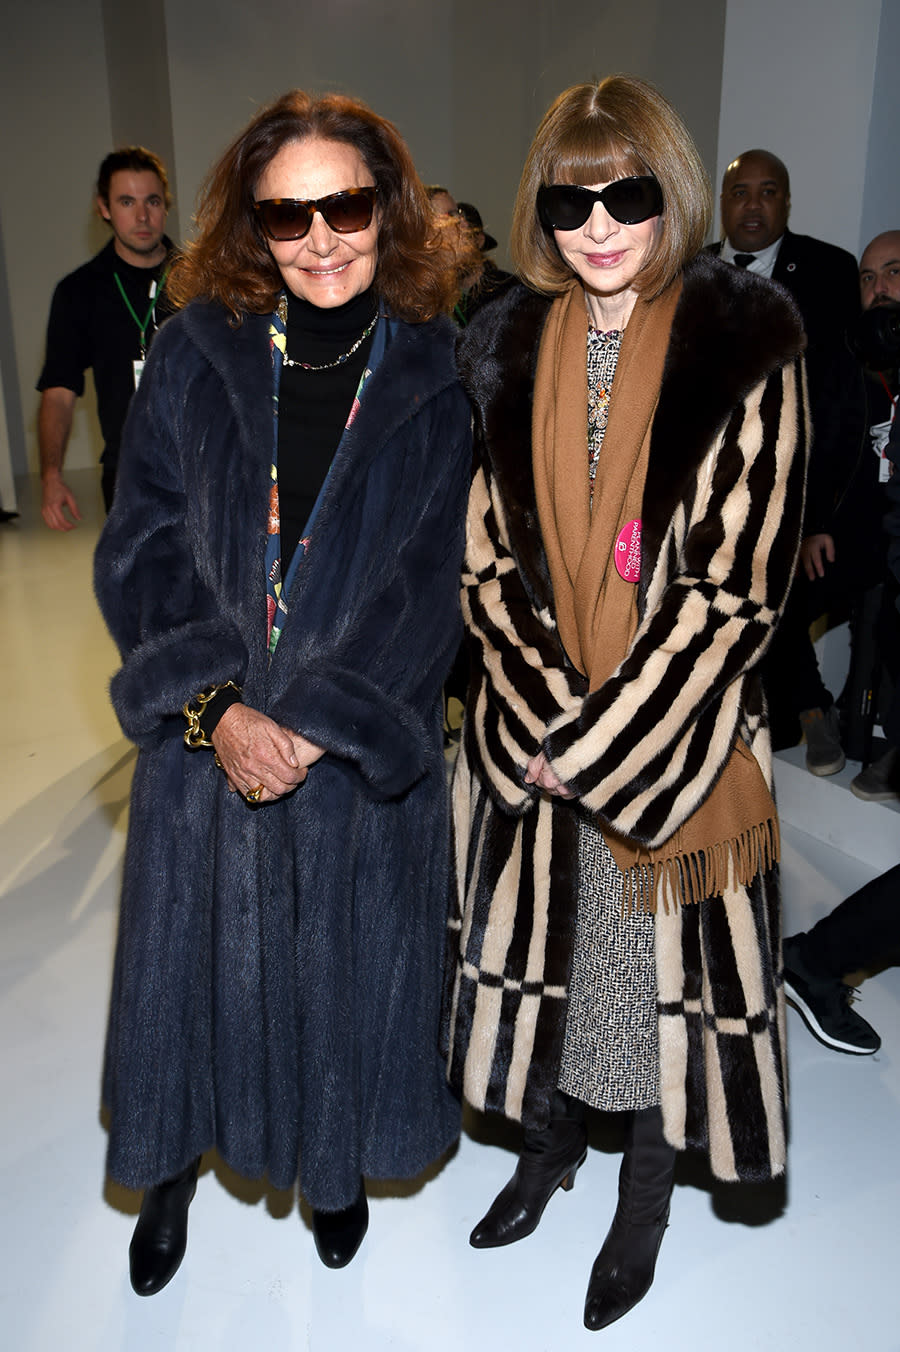 Designer Diane von Furstenberg and Vogue editor-in-chief Anna Wintour